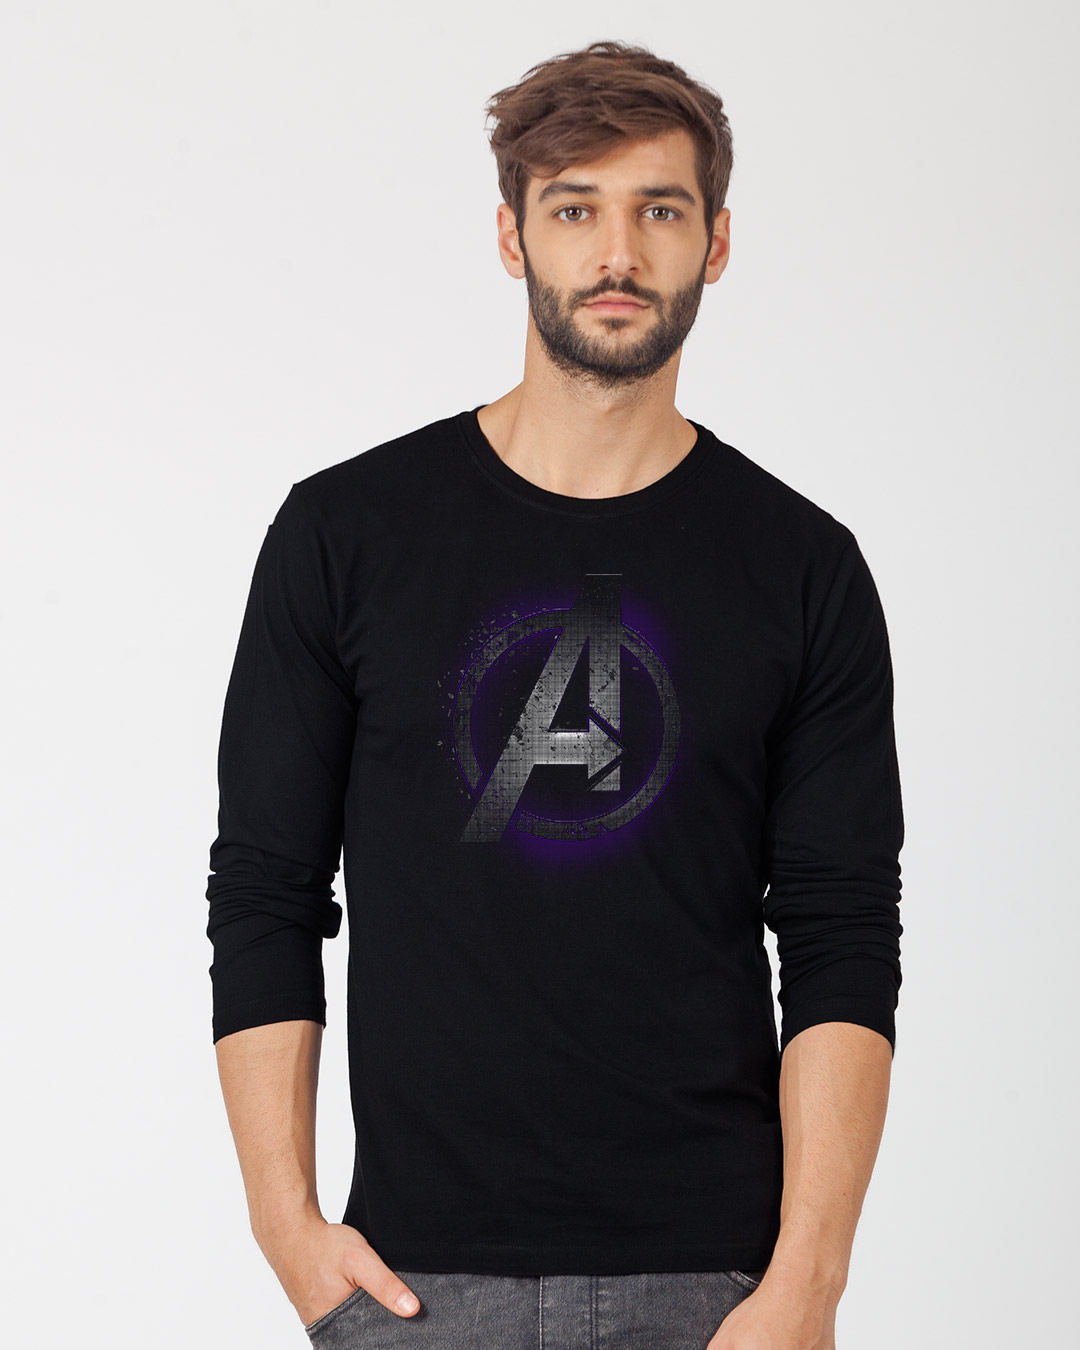 Buy Avengers Endgame (AVL) Printed Full Sleeve T-Shirt For 